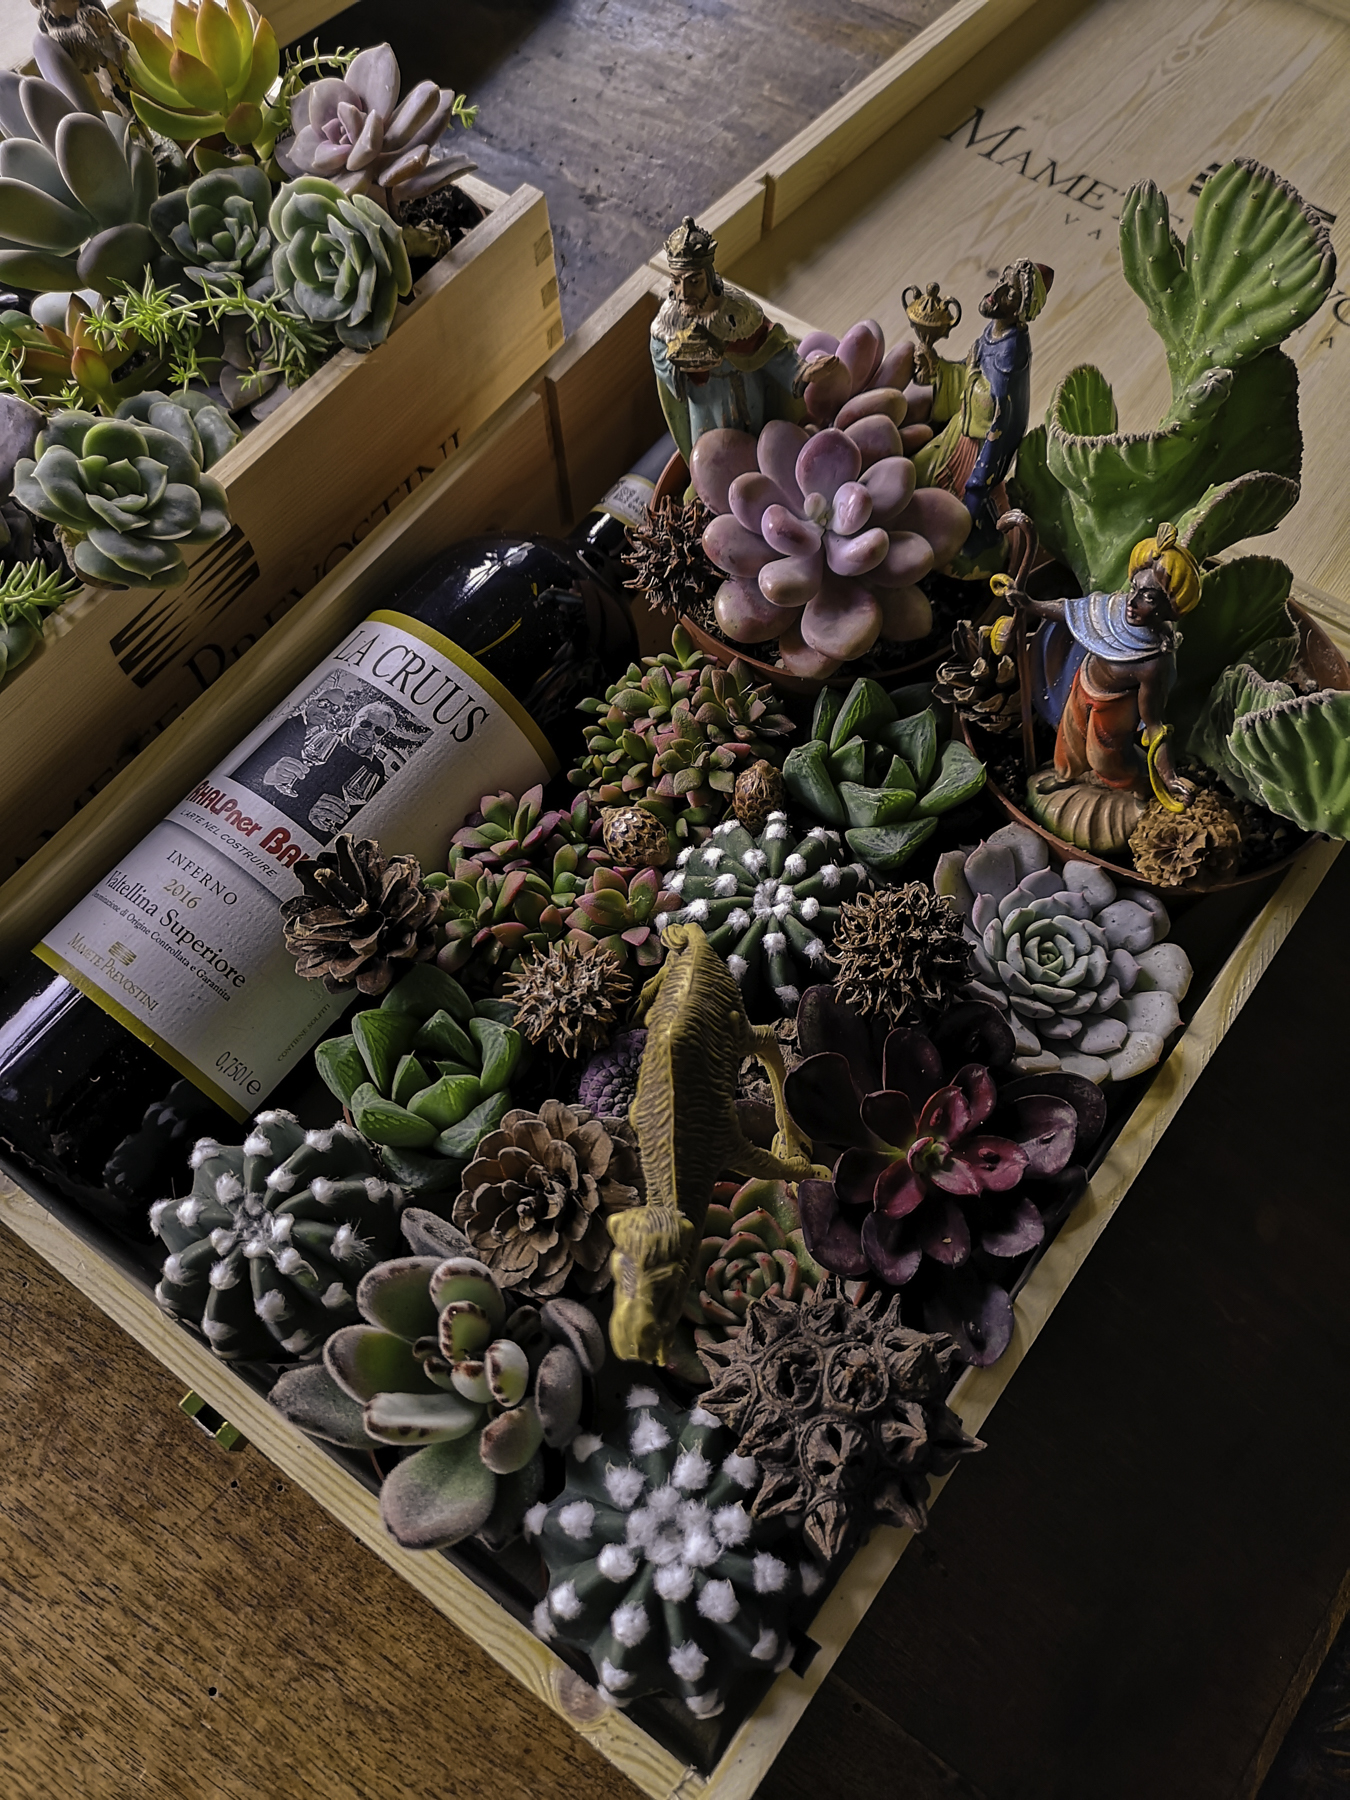  Blossomzine per cactus mania, bottiglia di vino e succulente idea regalo 